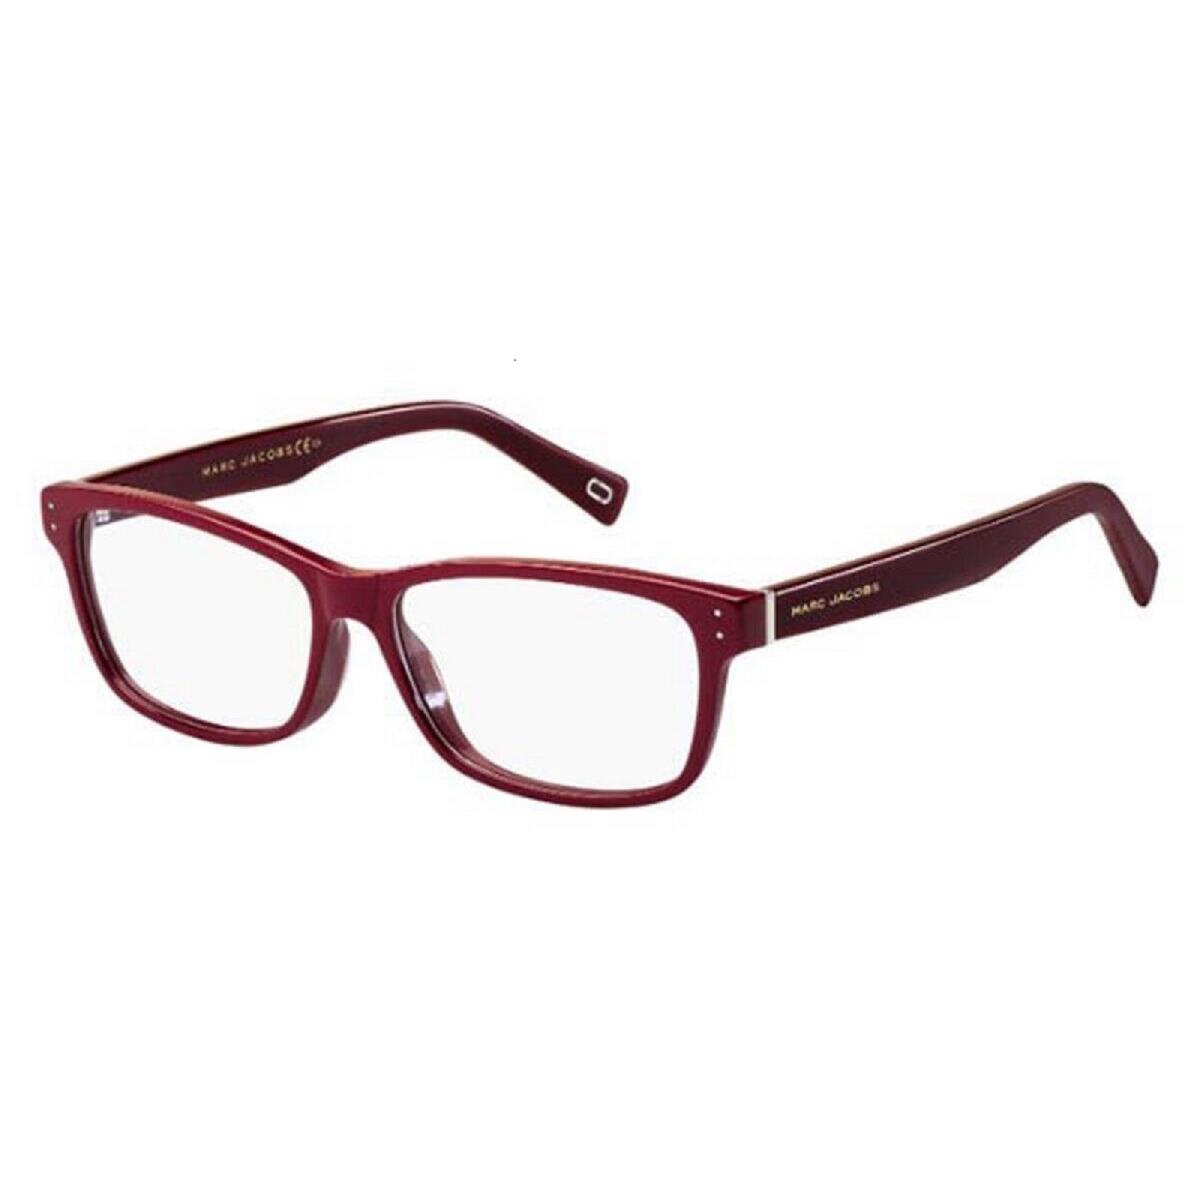 Marc Jacobs Men Eyeglasses Size 52mm-140mm-14mm